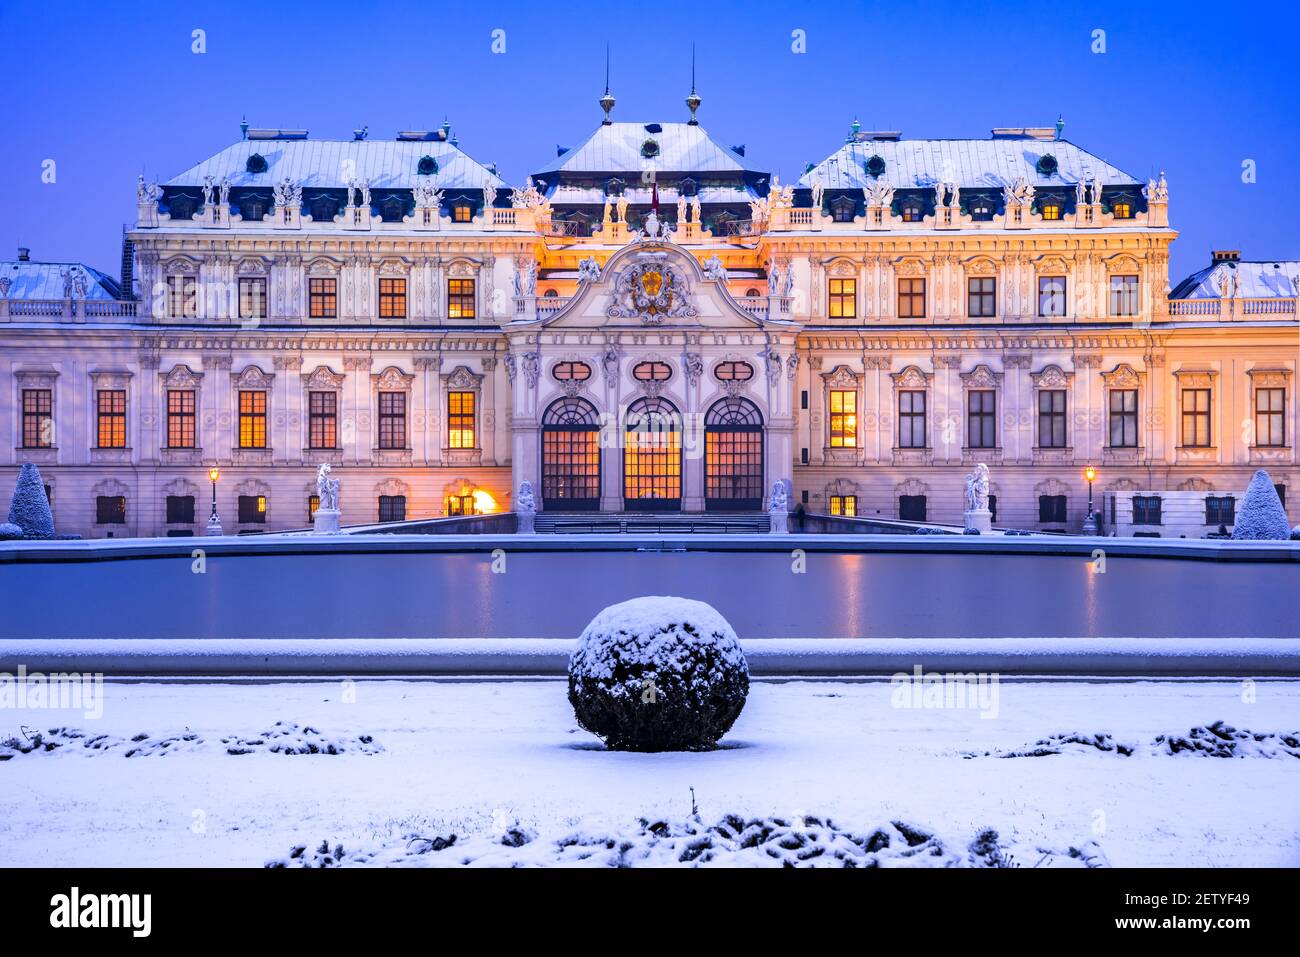 Vienne, Autriche. Belvédère supérieur illuminé hiver nuit réflexion, Voyage concept paysage. Banque D'Images